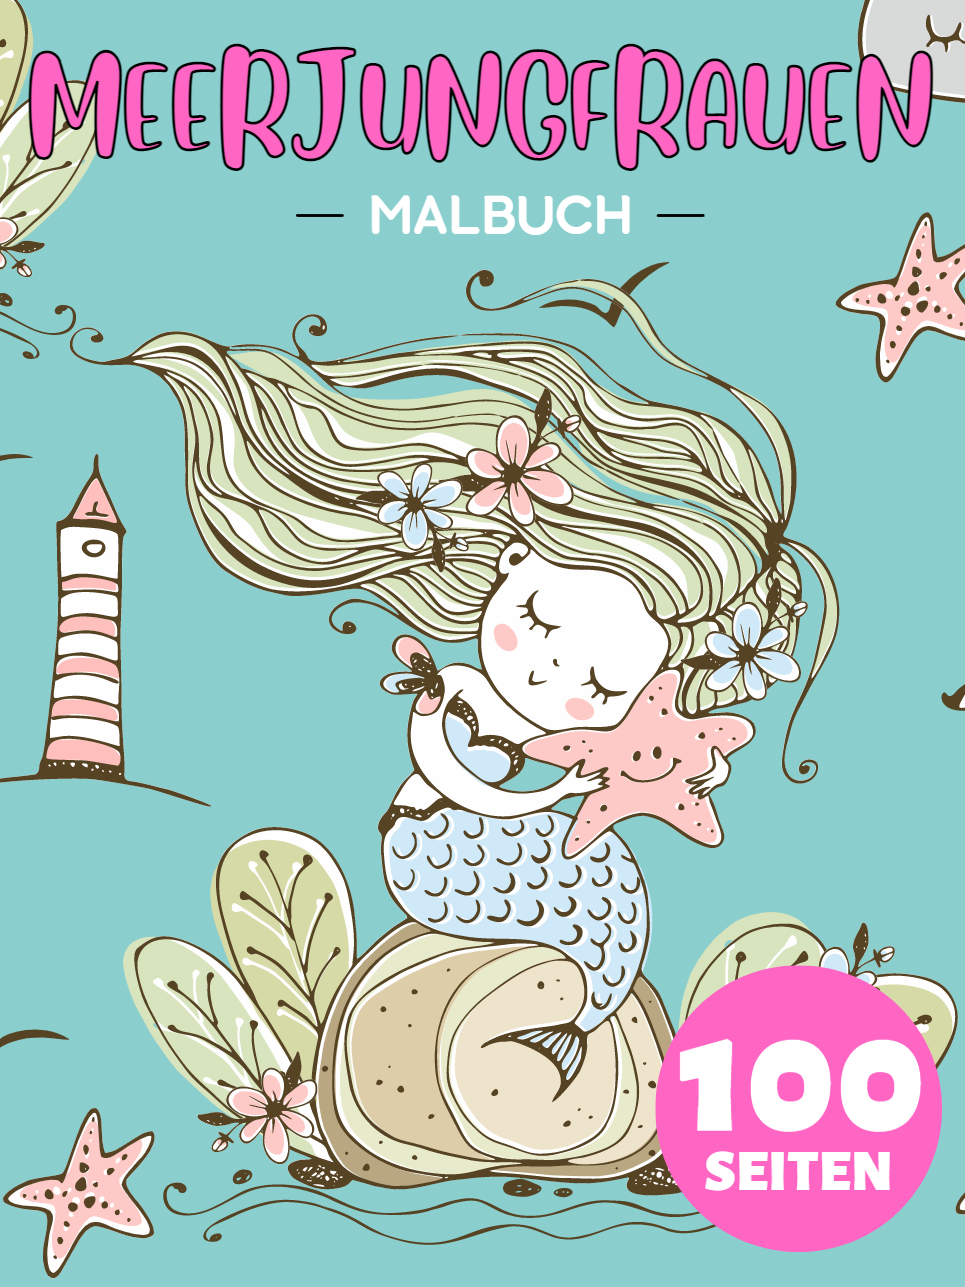 Meerjungfrauen Malbuch Für Kinder